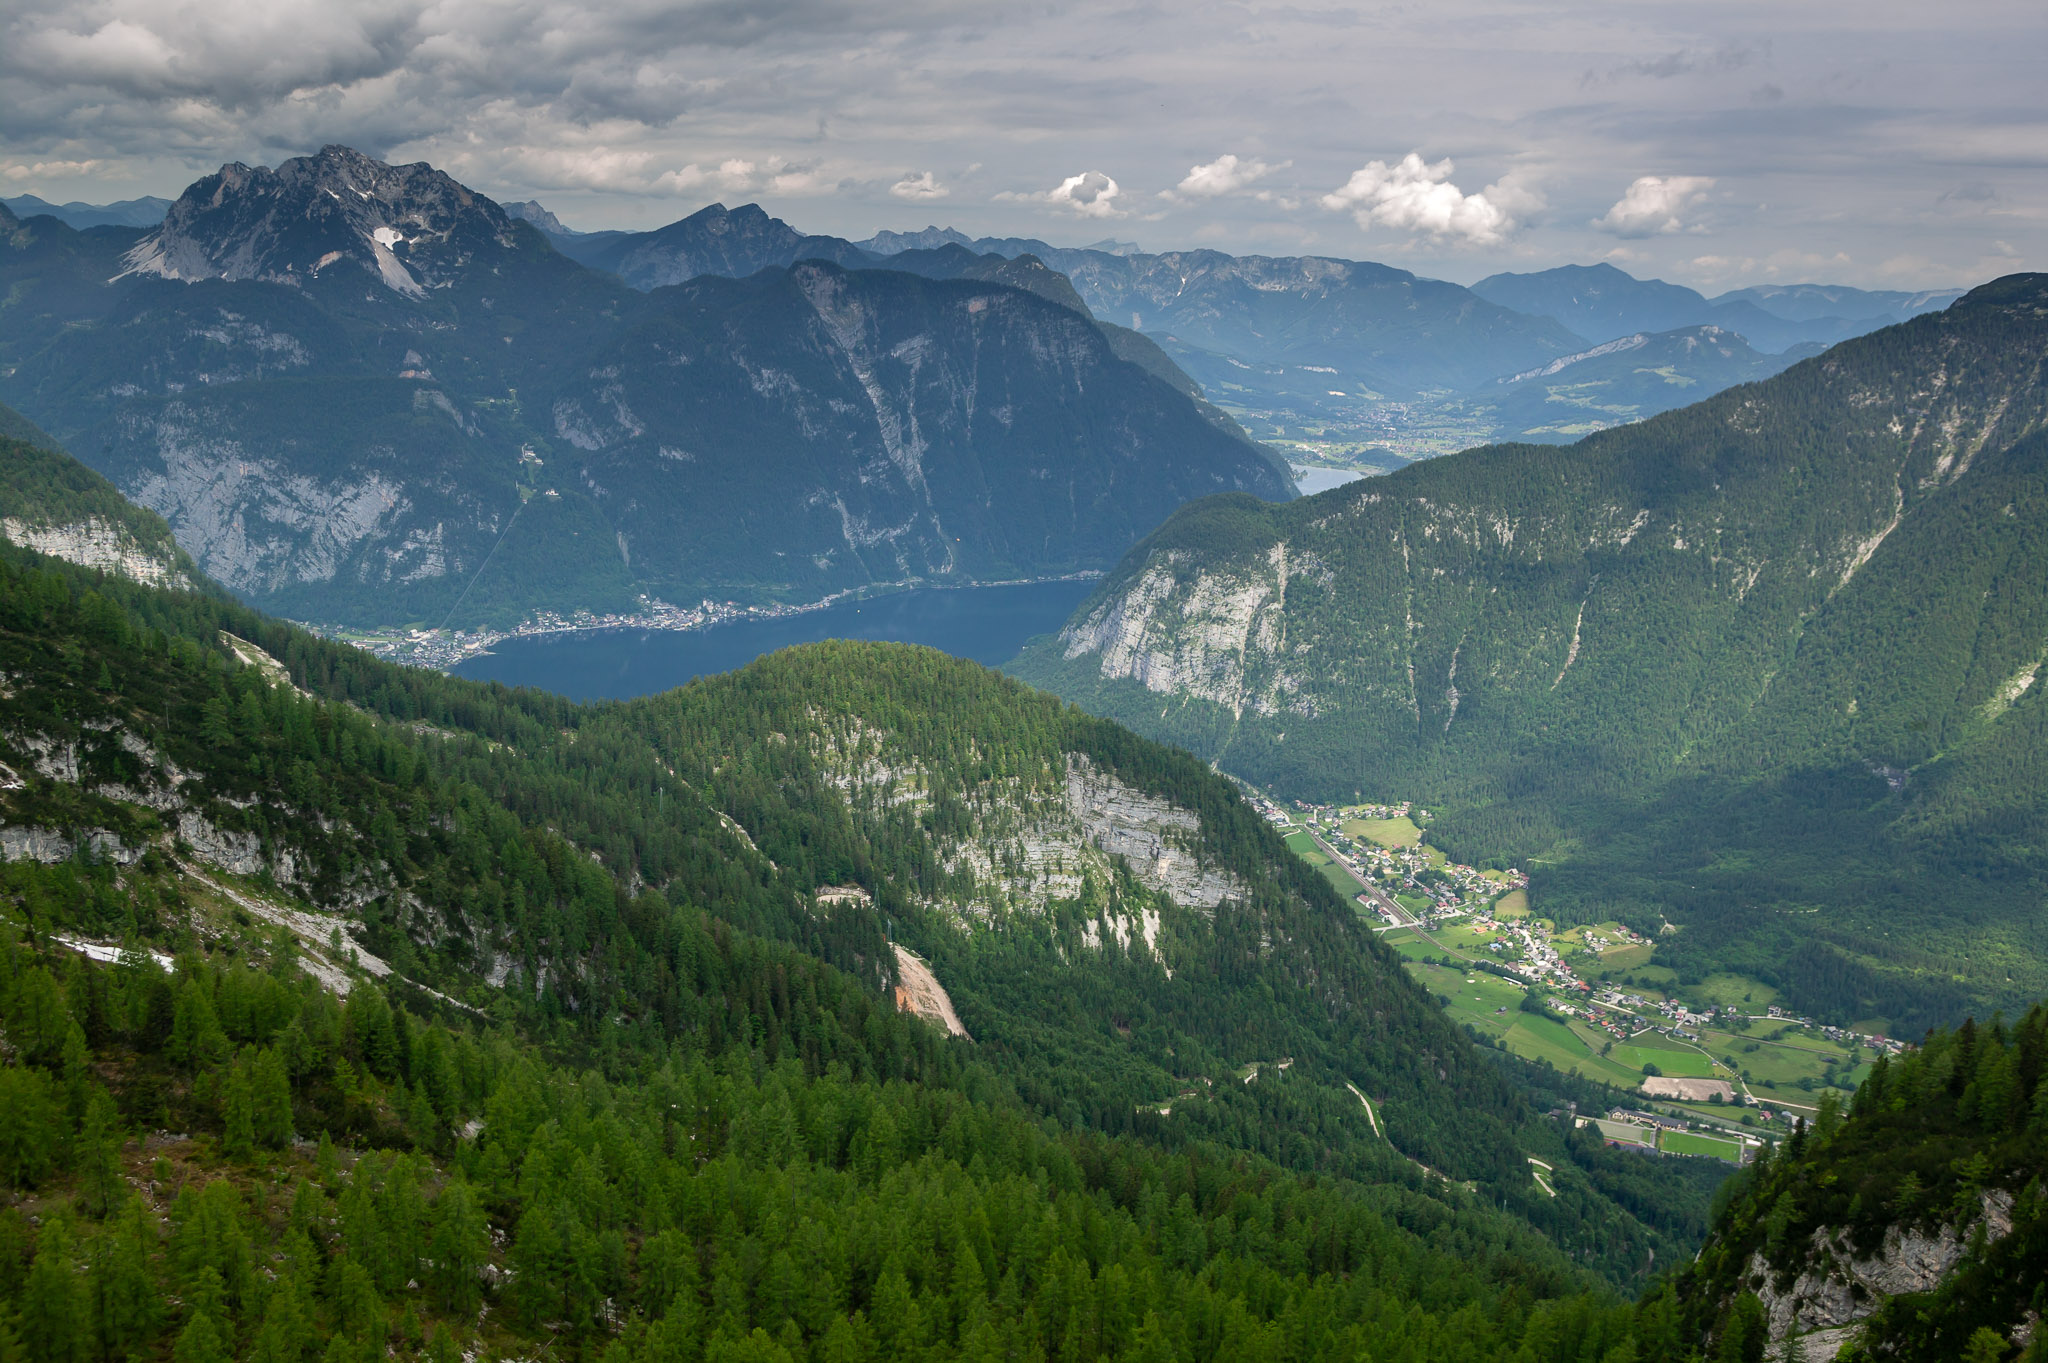 View over valley, Hallstatt in distance